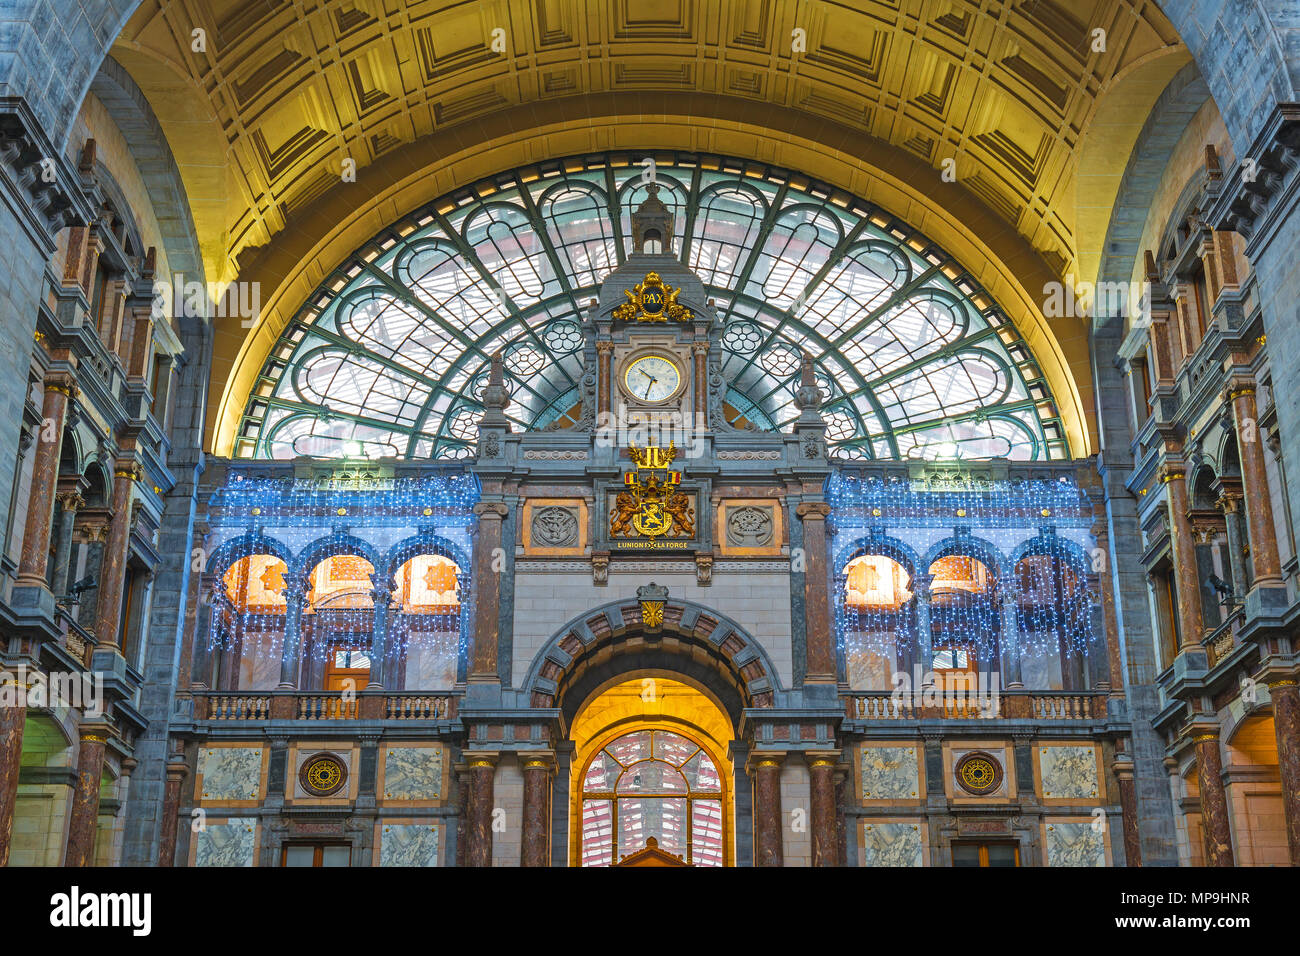 Façade de la Gare Centrale d'Anvers avec dorures et néo-classique, Anvers, Belgique. Banque D'Images